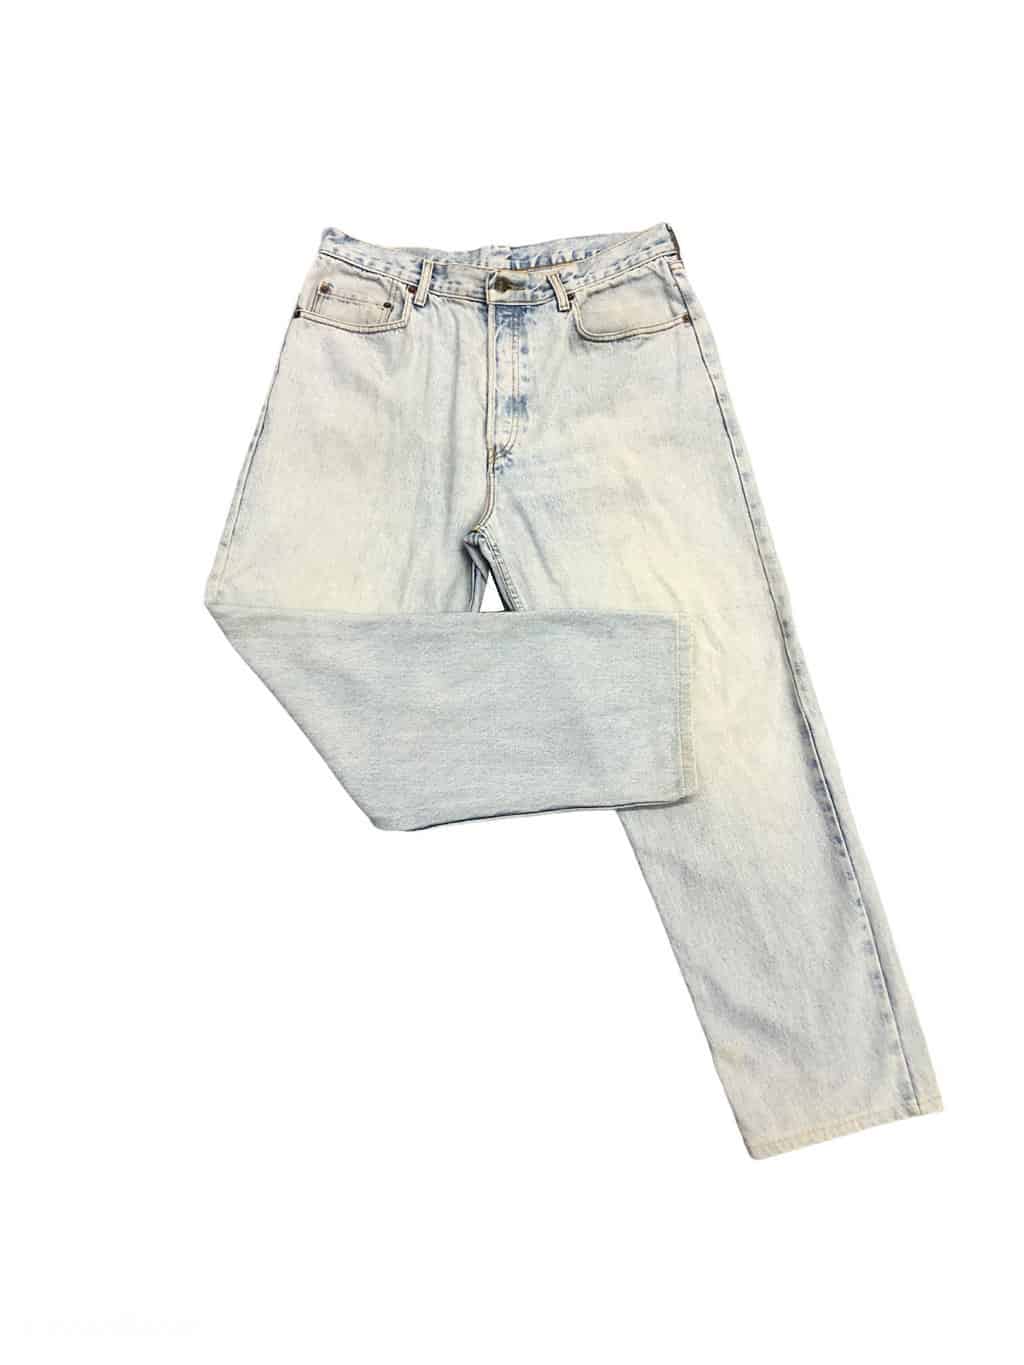 Vintage 90s Levis 618's rare pale blue high-waist mom jeans - W35 x  -  St Cyr Vintage